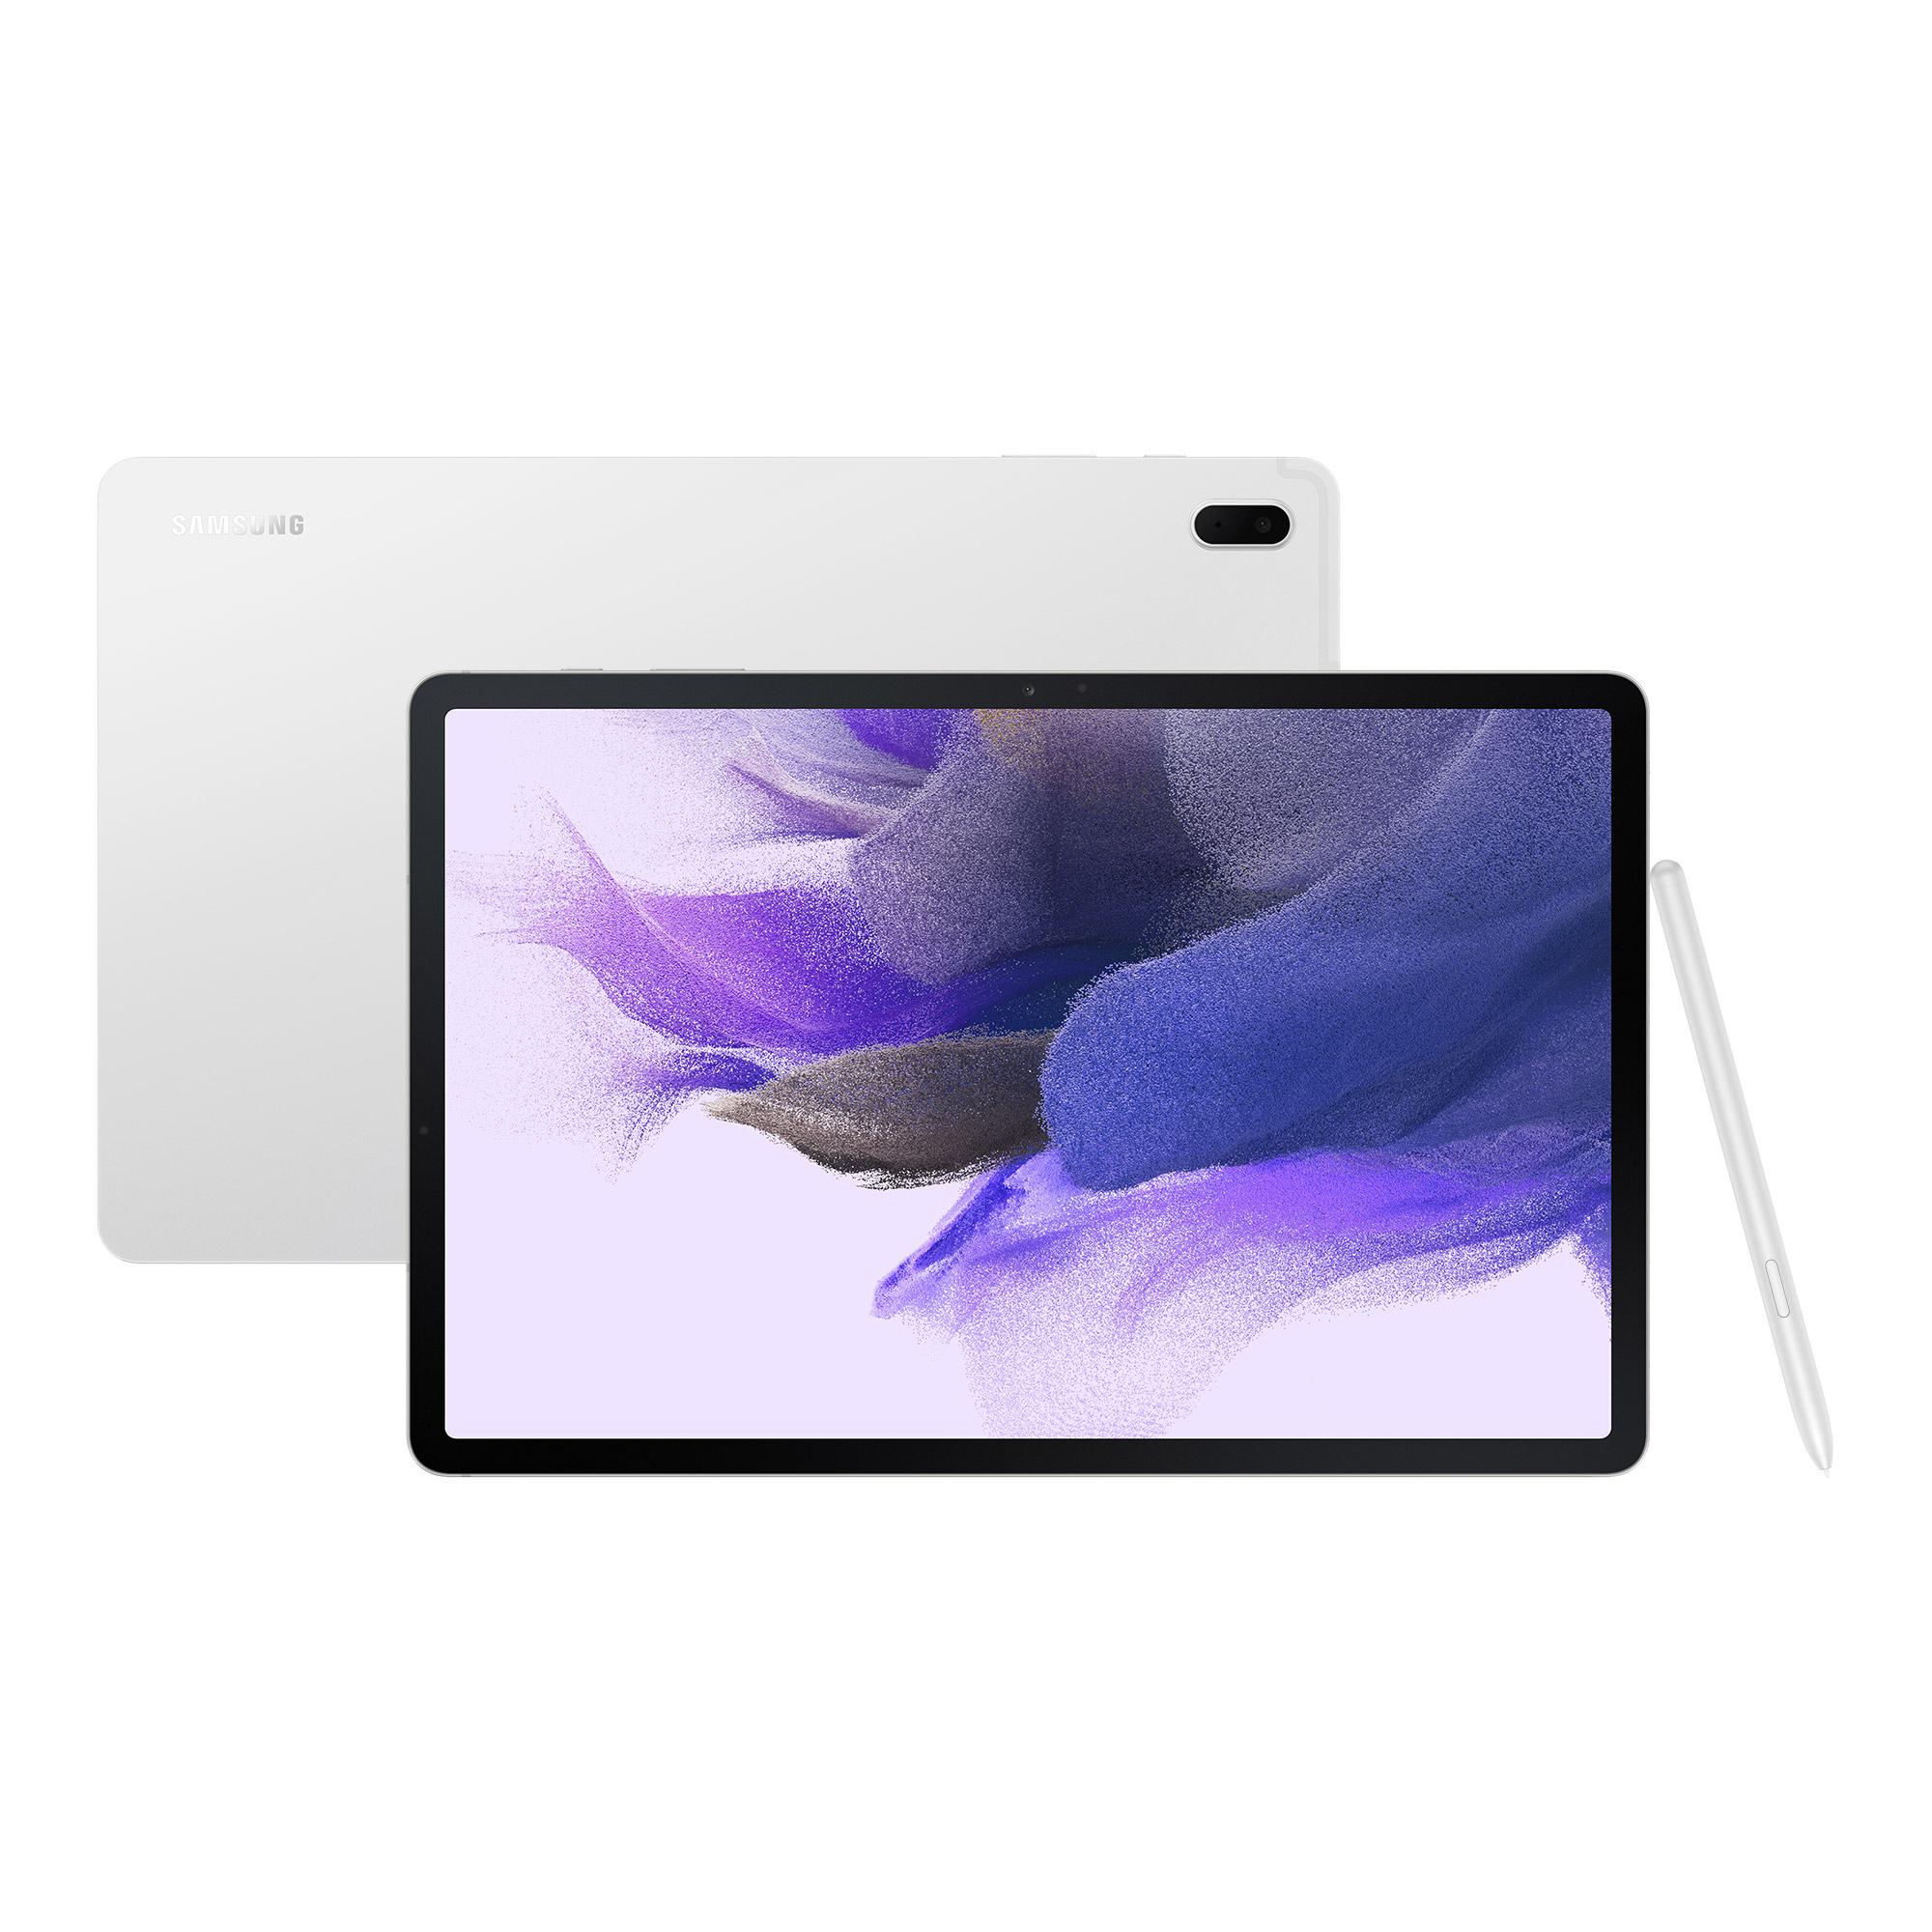 Image of SAMSUNG Galaxy Tab S7 FE 12.4" Tablet - 64 GB, Mystic Silver, Silver/Grey